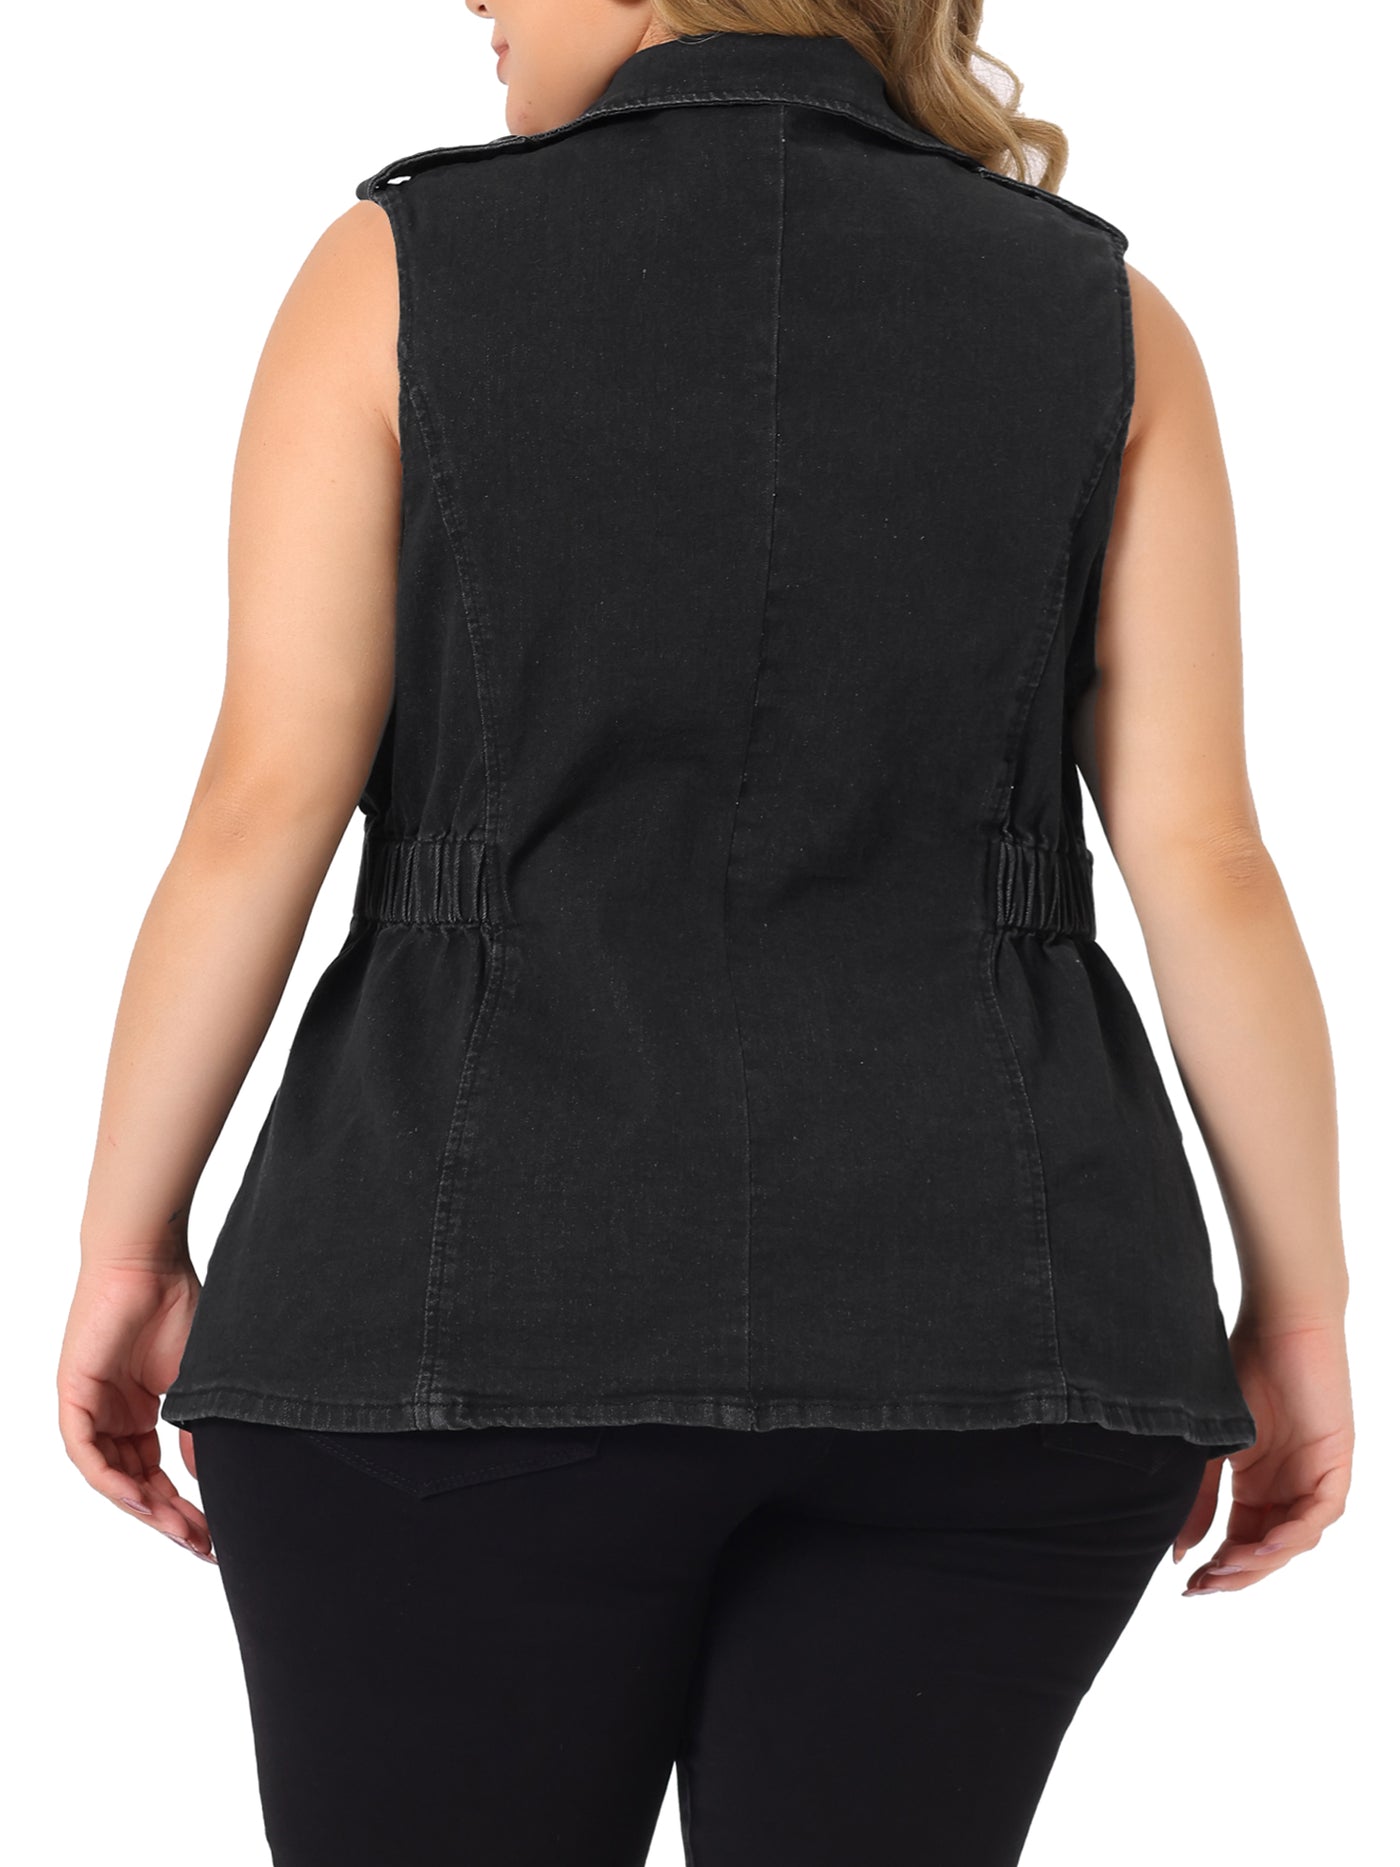 Bublédon Plus Size Jacket Sleeveless Waistline Notched Lapel Button Denim Vests